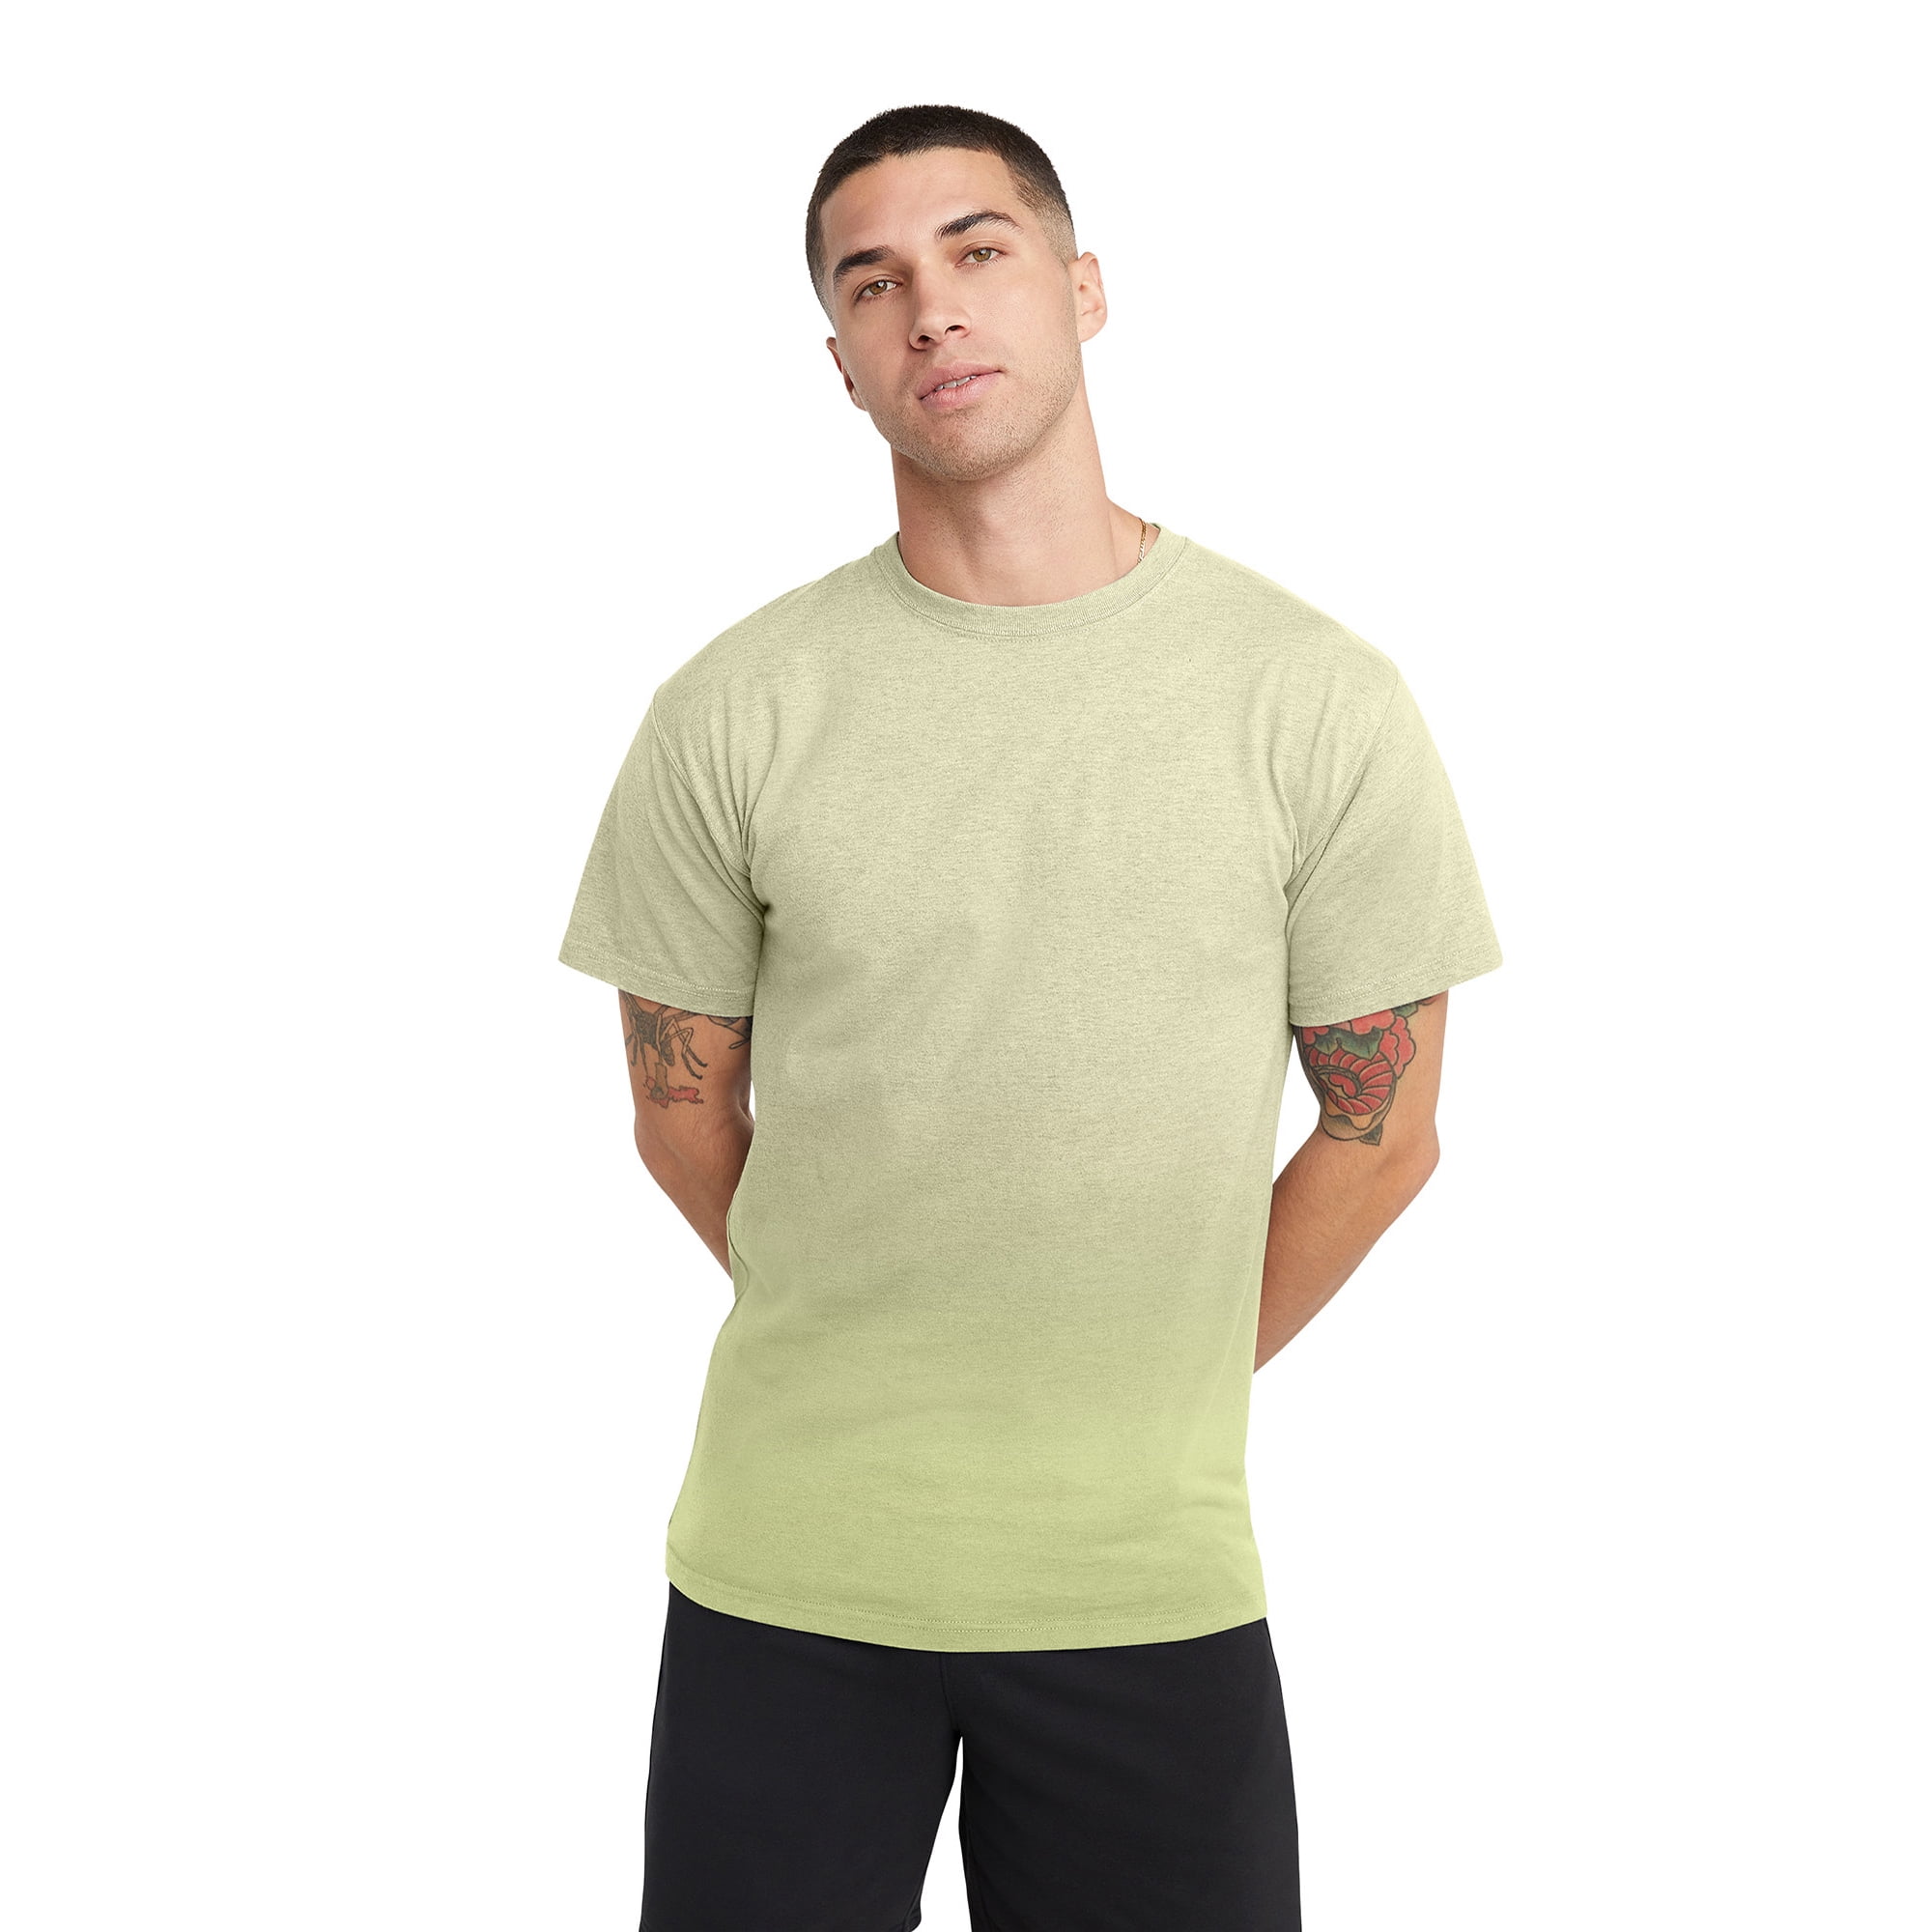 Hanes Men's Originals Ombre Pattern Cotton T-Shirt, Sizes S-3XL